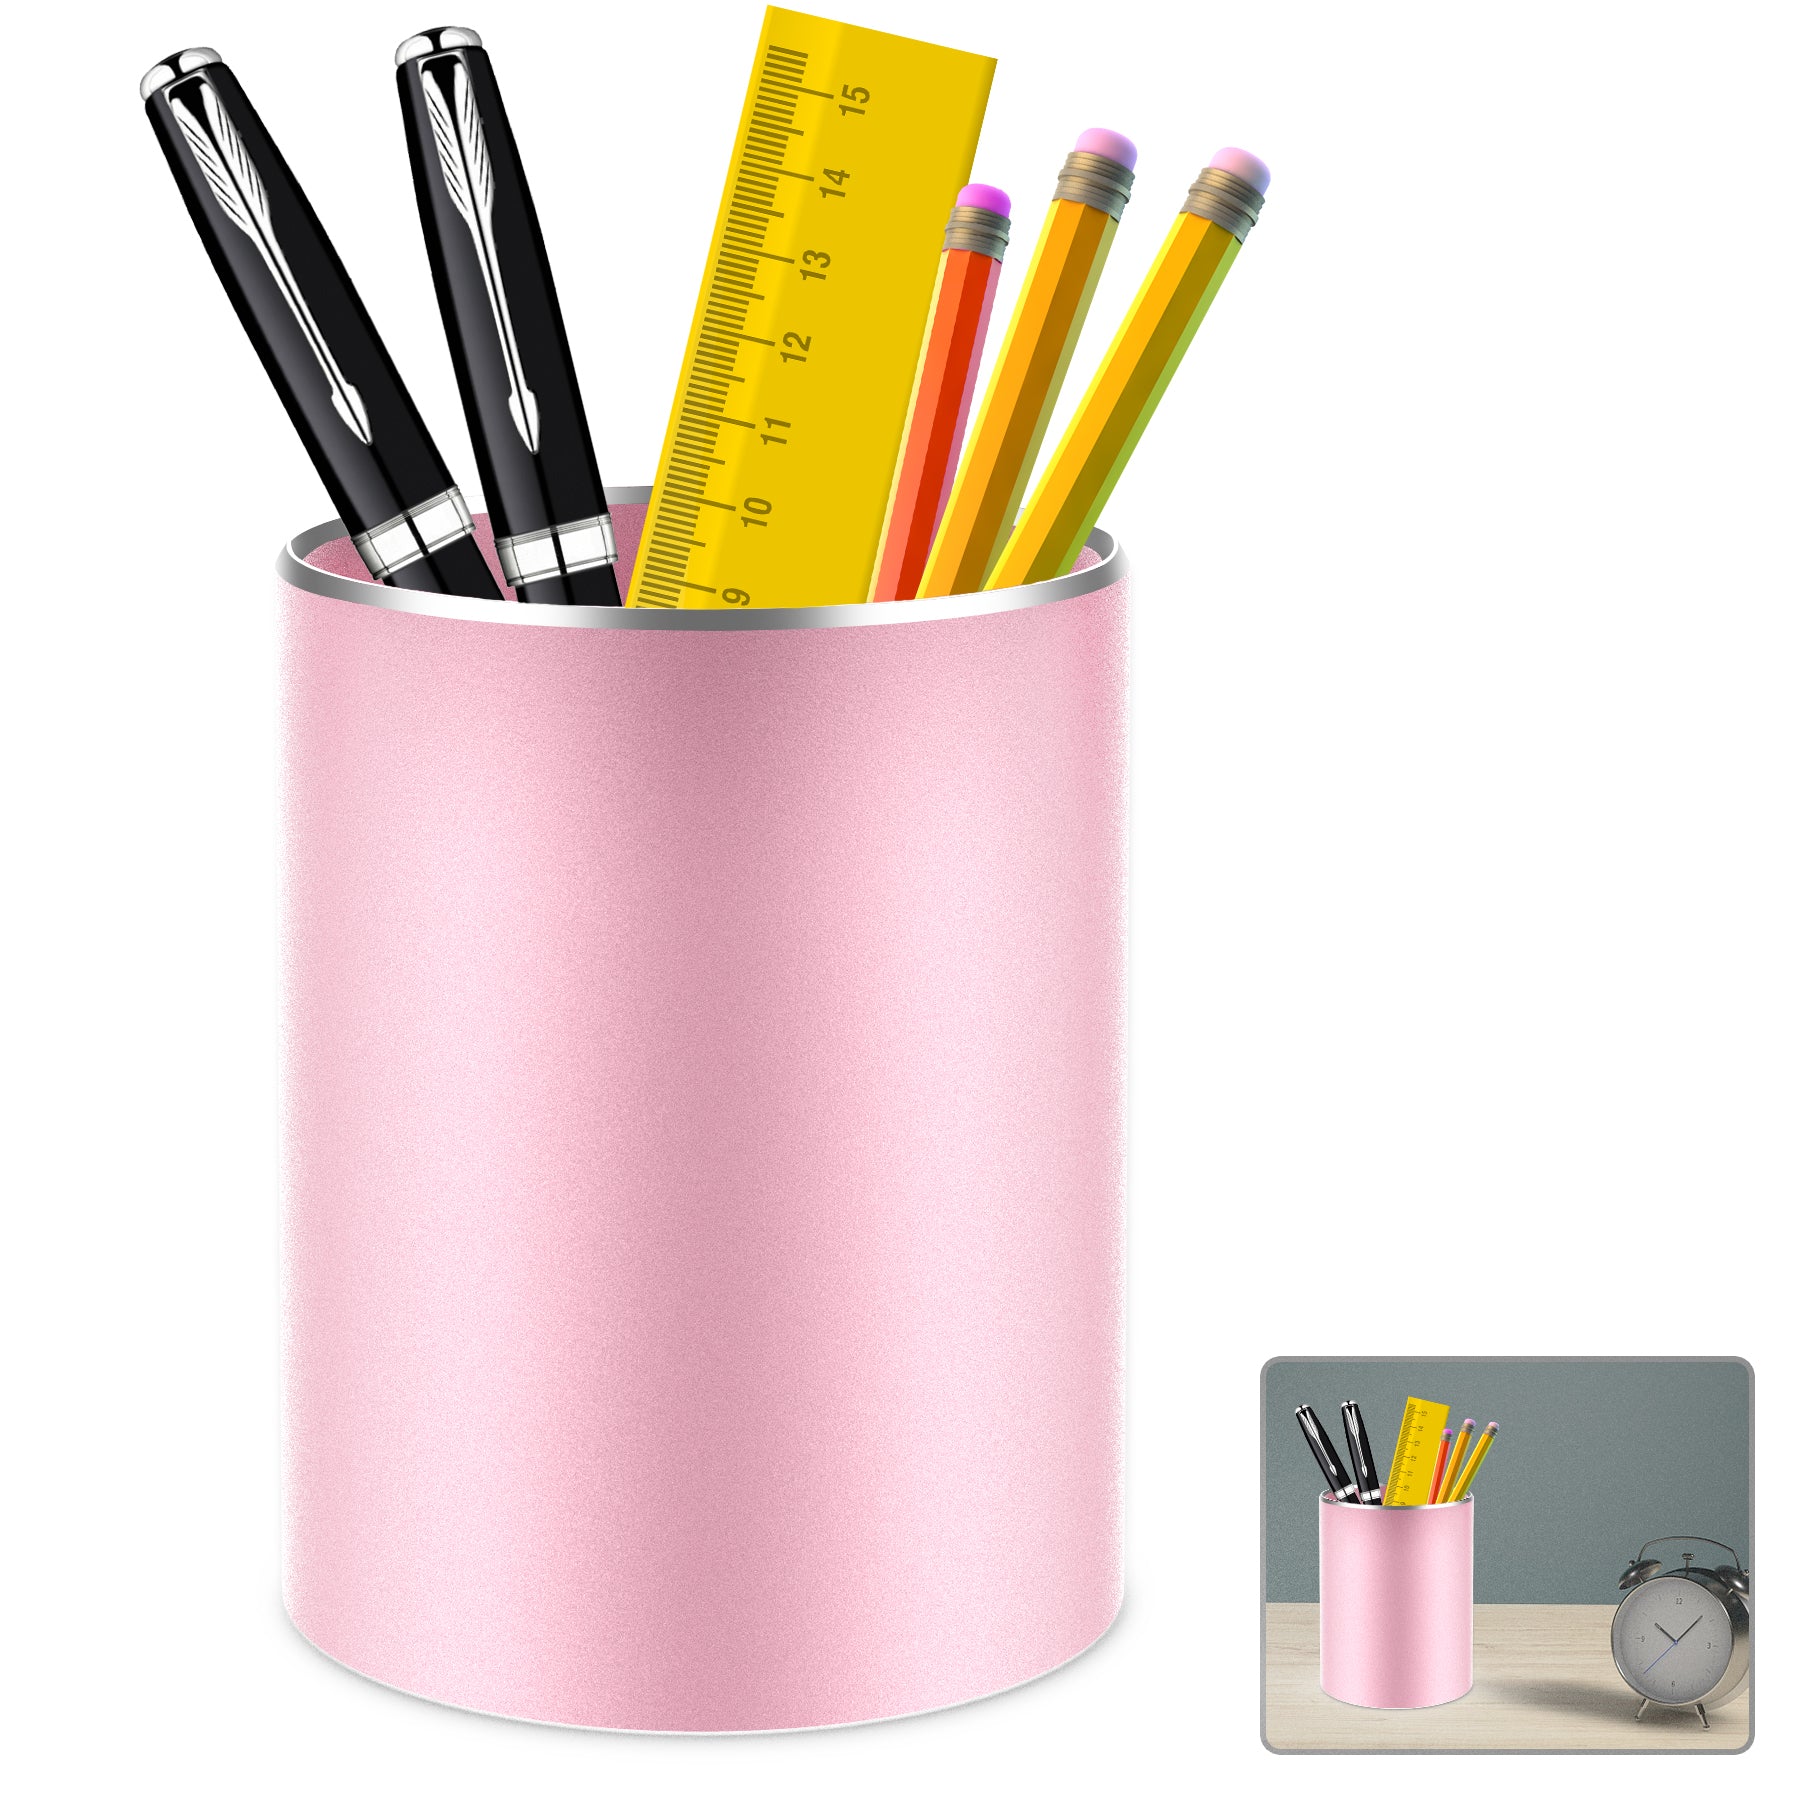 Giecy Pen Holder Pencil Holder for Desk Metal Desk Pen Cup Holder Make